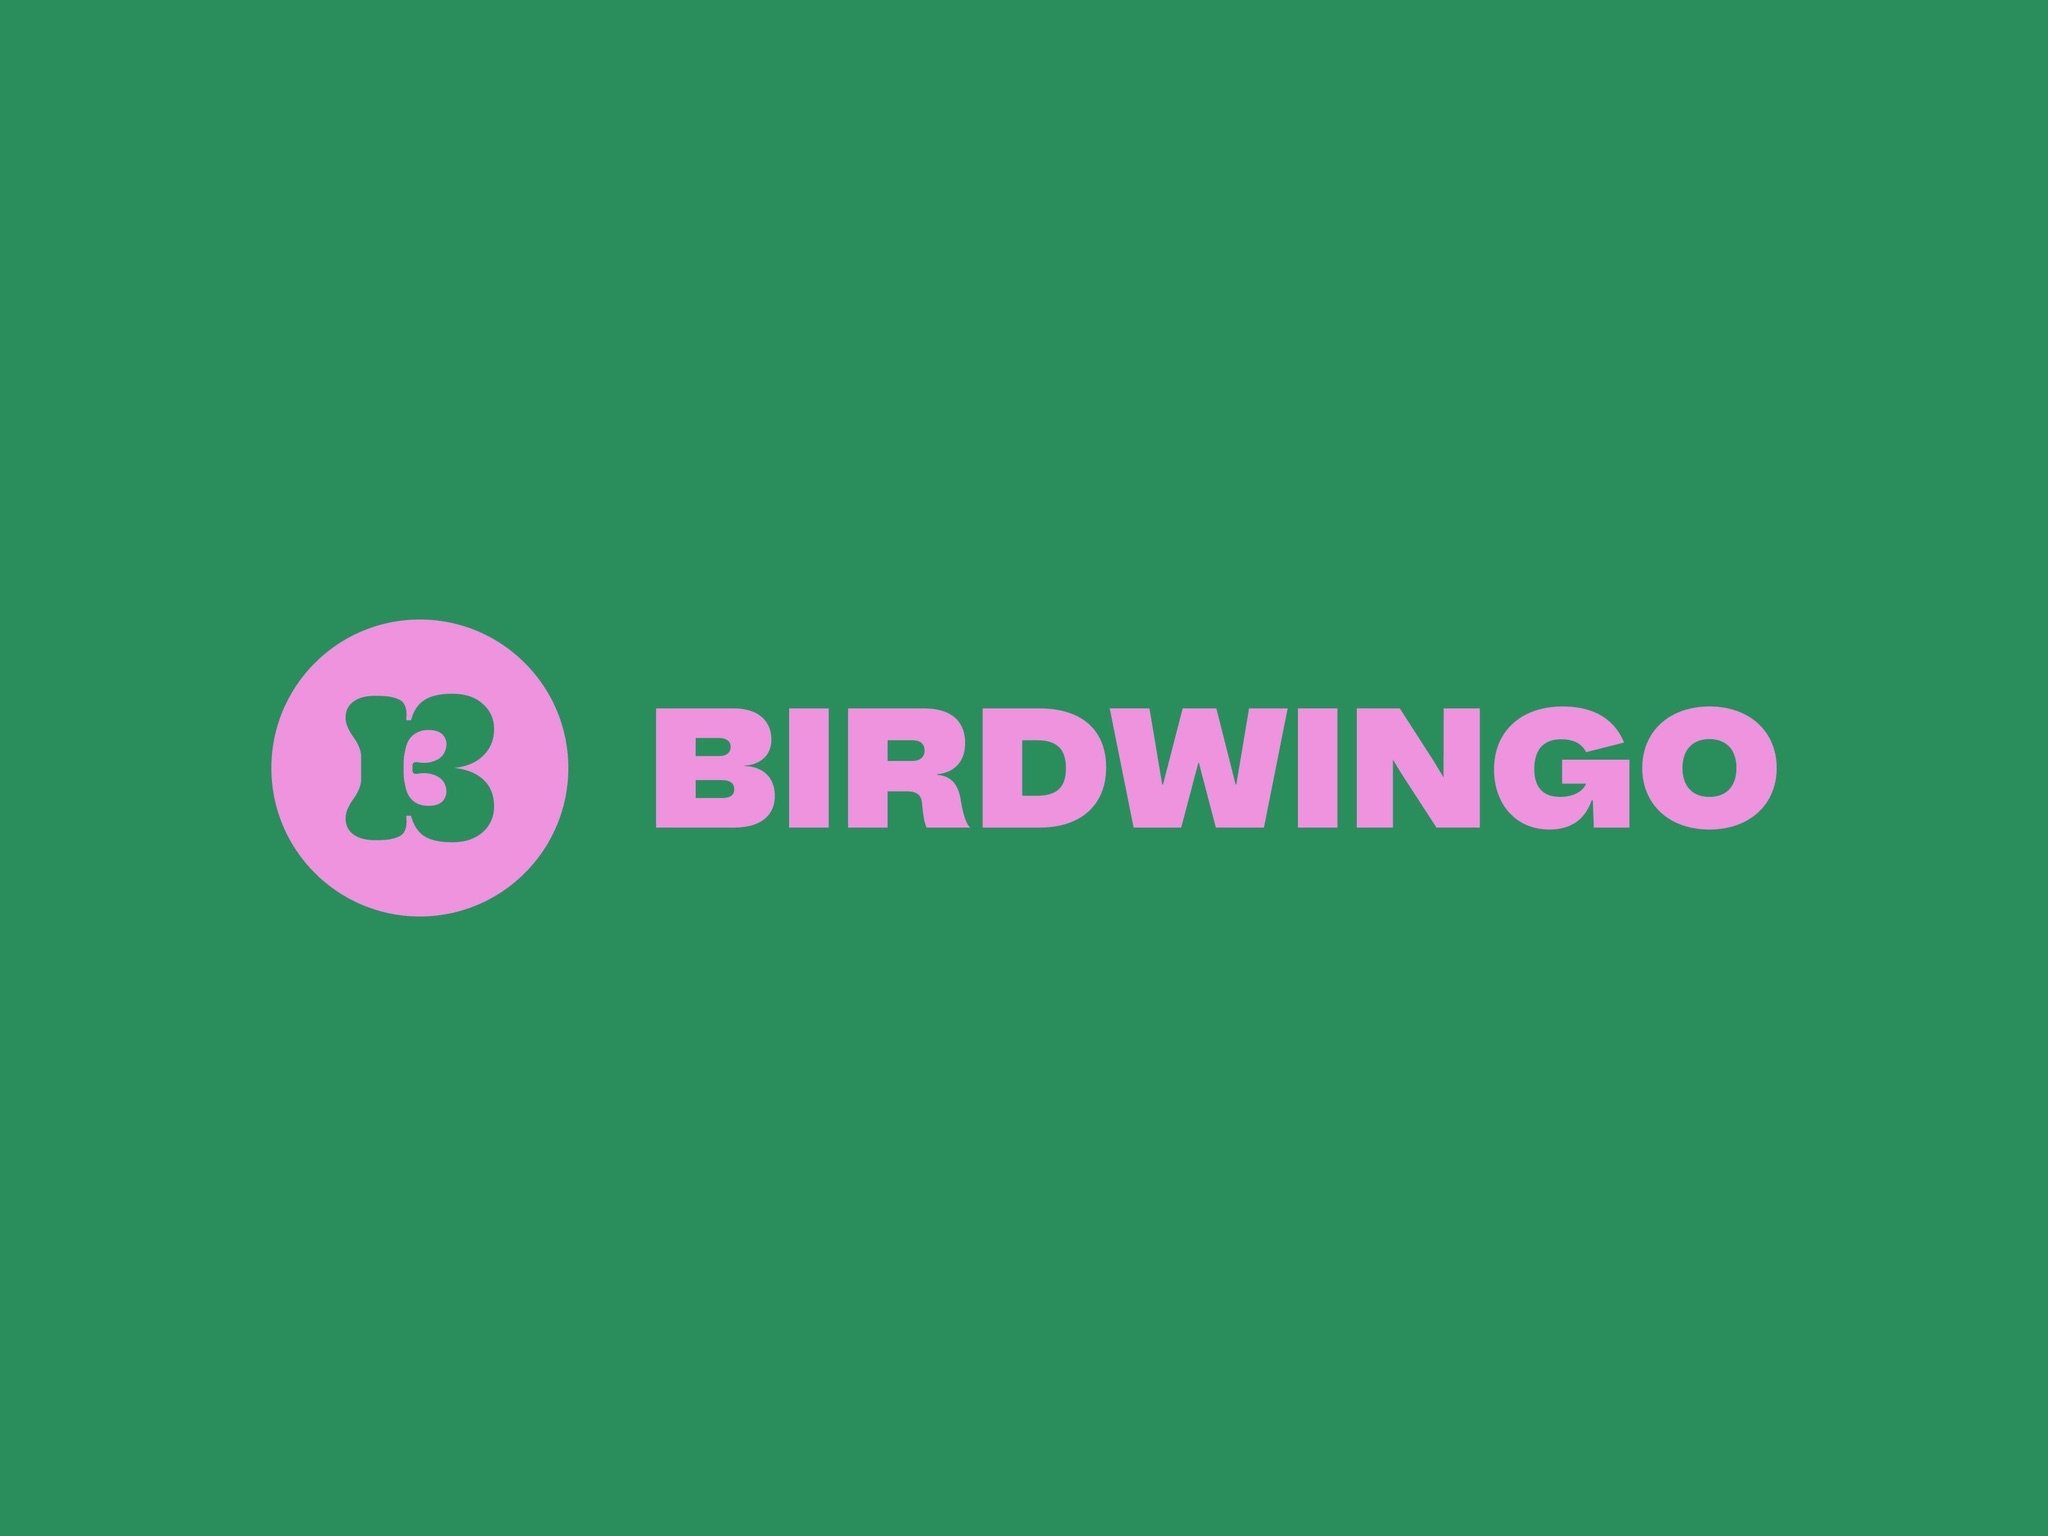 Birdwingo logo.jpeg